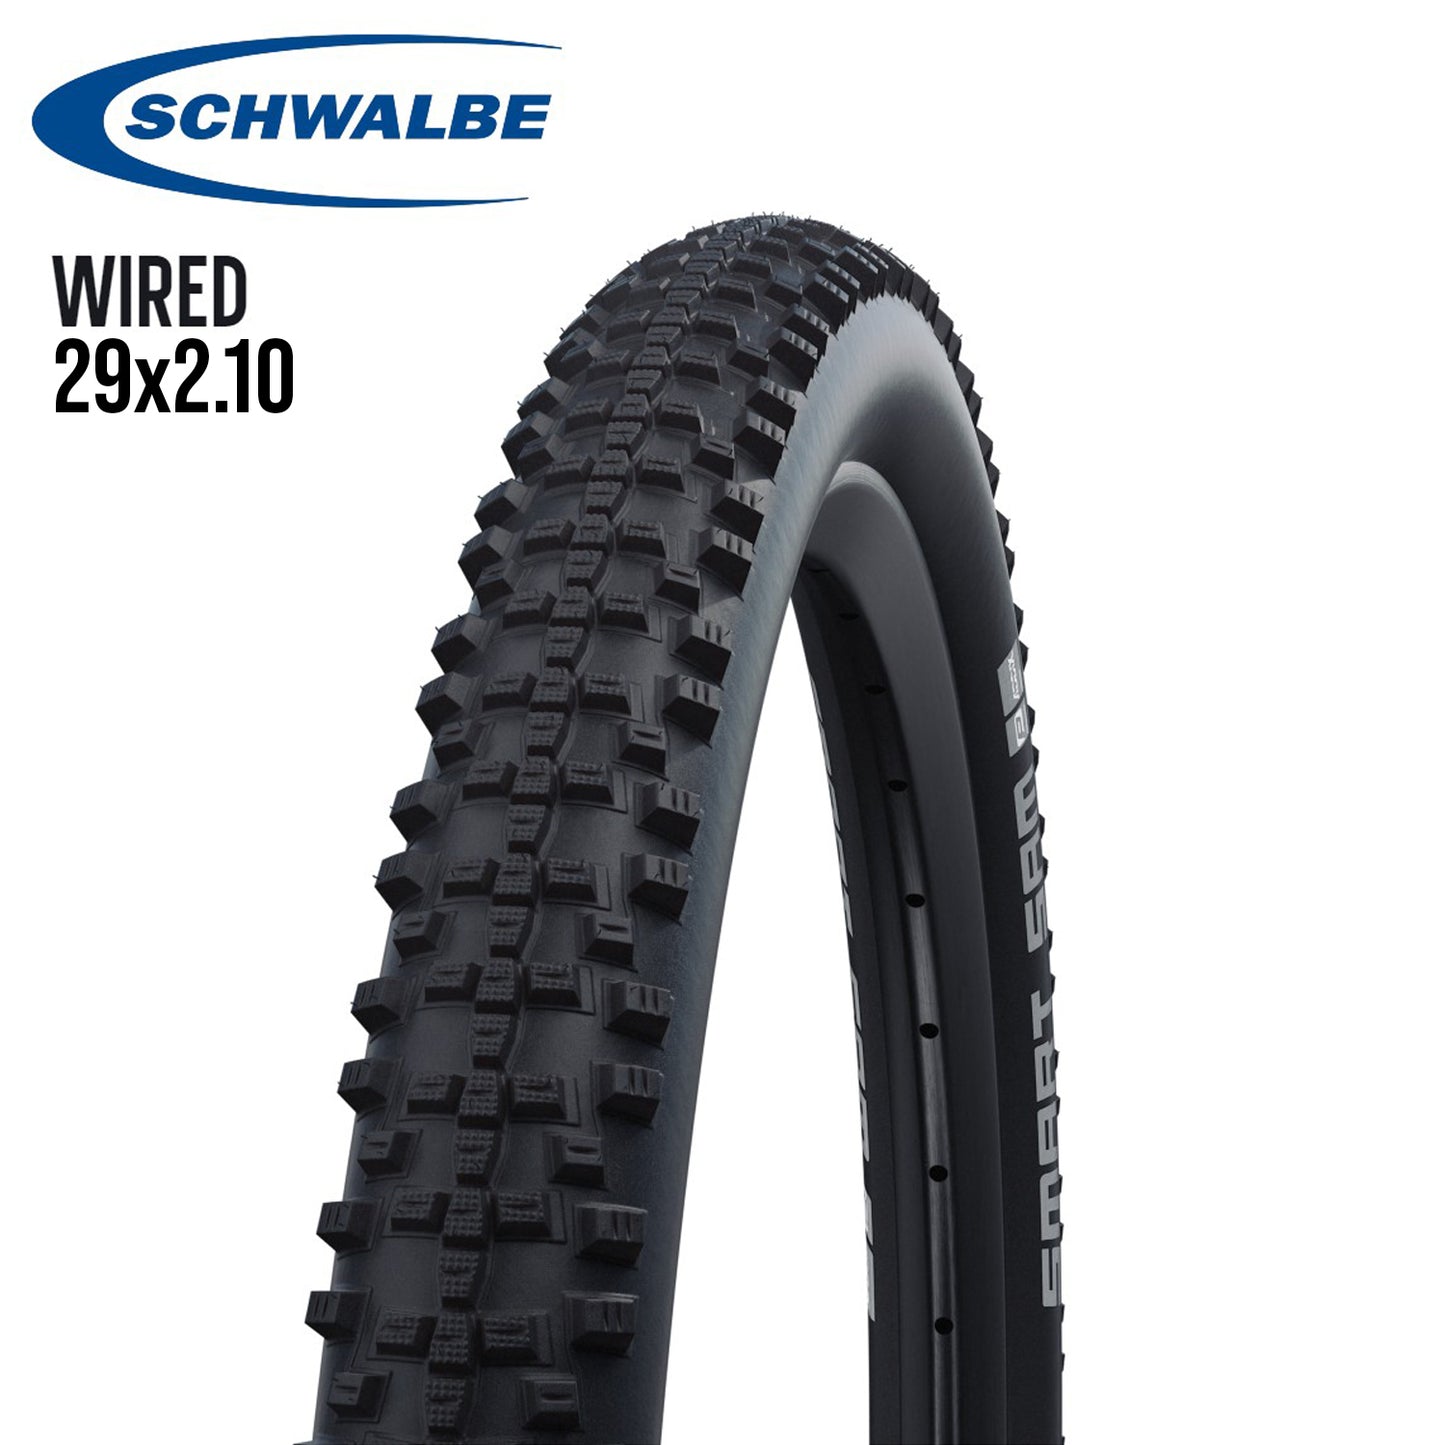 Schwalbe Smart Sam 29er All-Around MTB Tire Wire Bead - Black